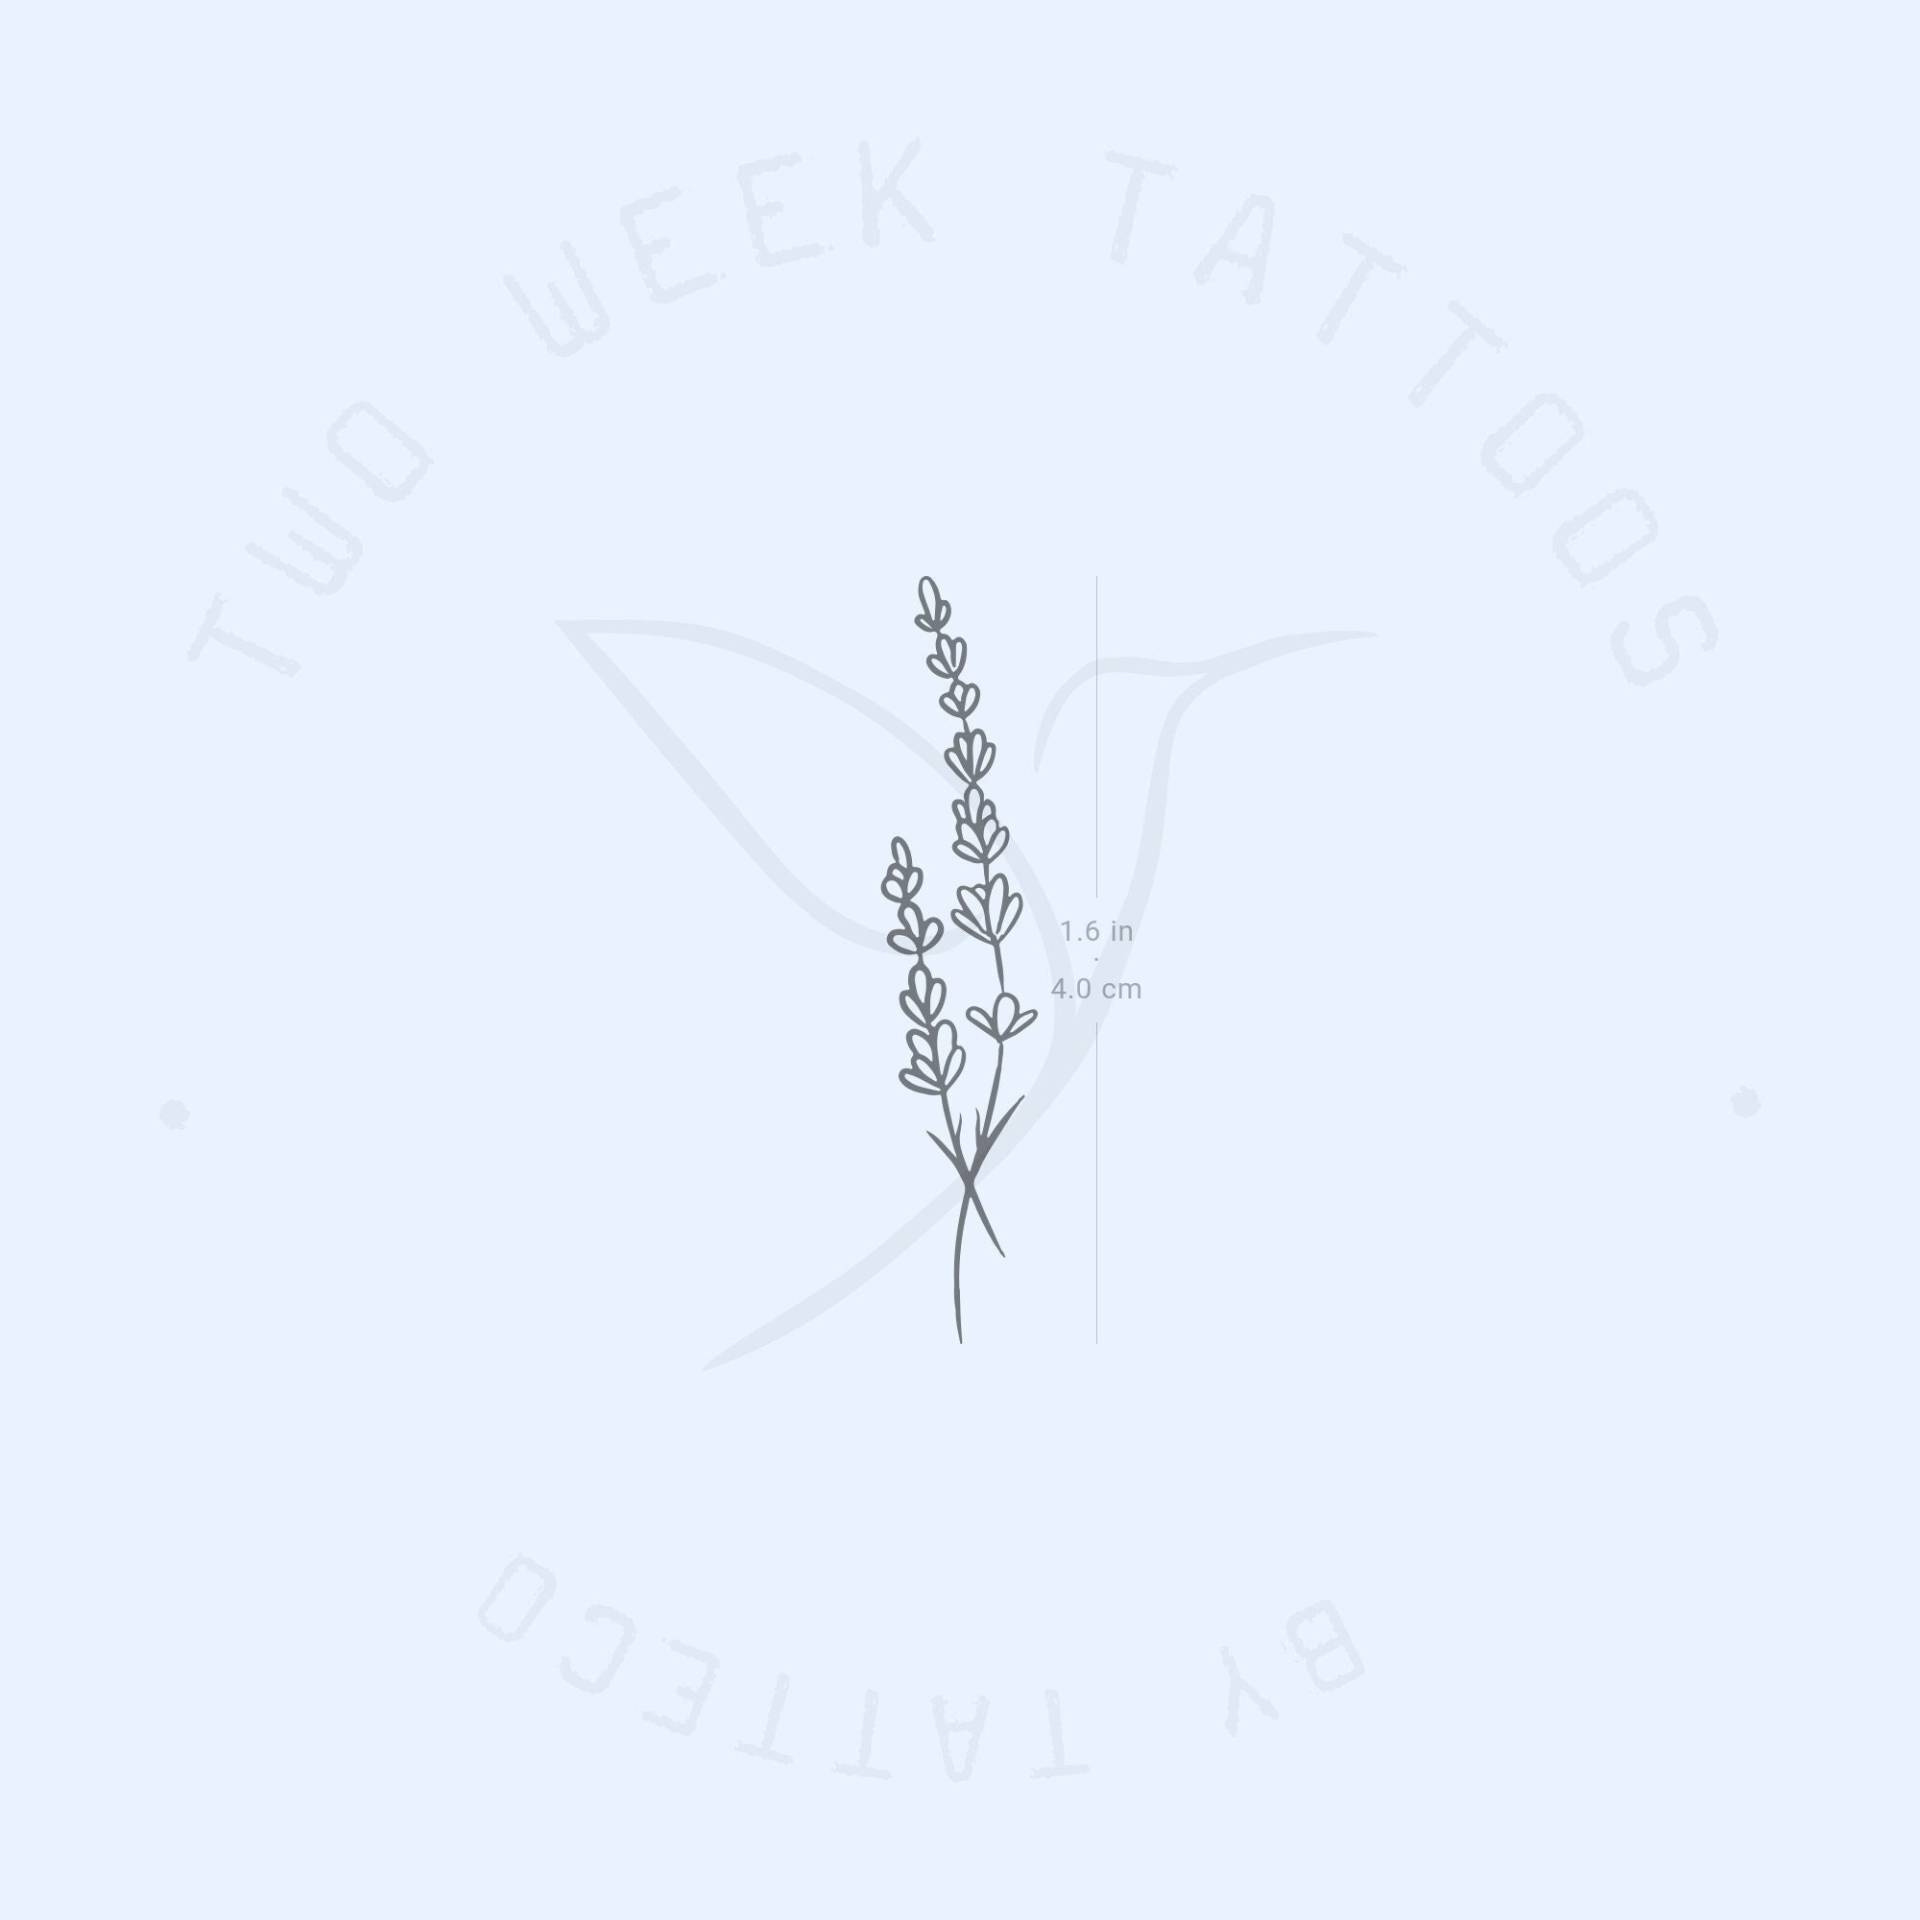 Lavendel Semi-Permanent 2-Wochen Tattoo | 2Er Set von Etsy - twoweektattoos